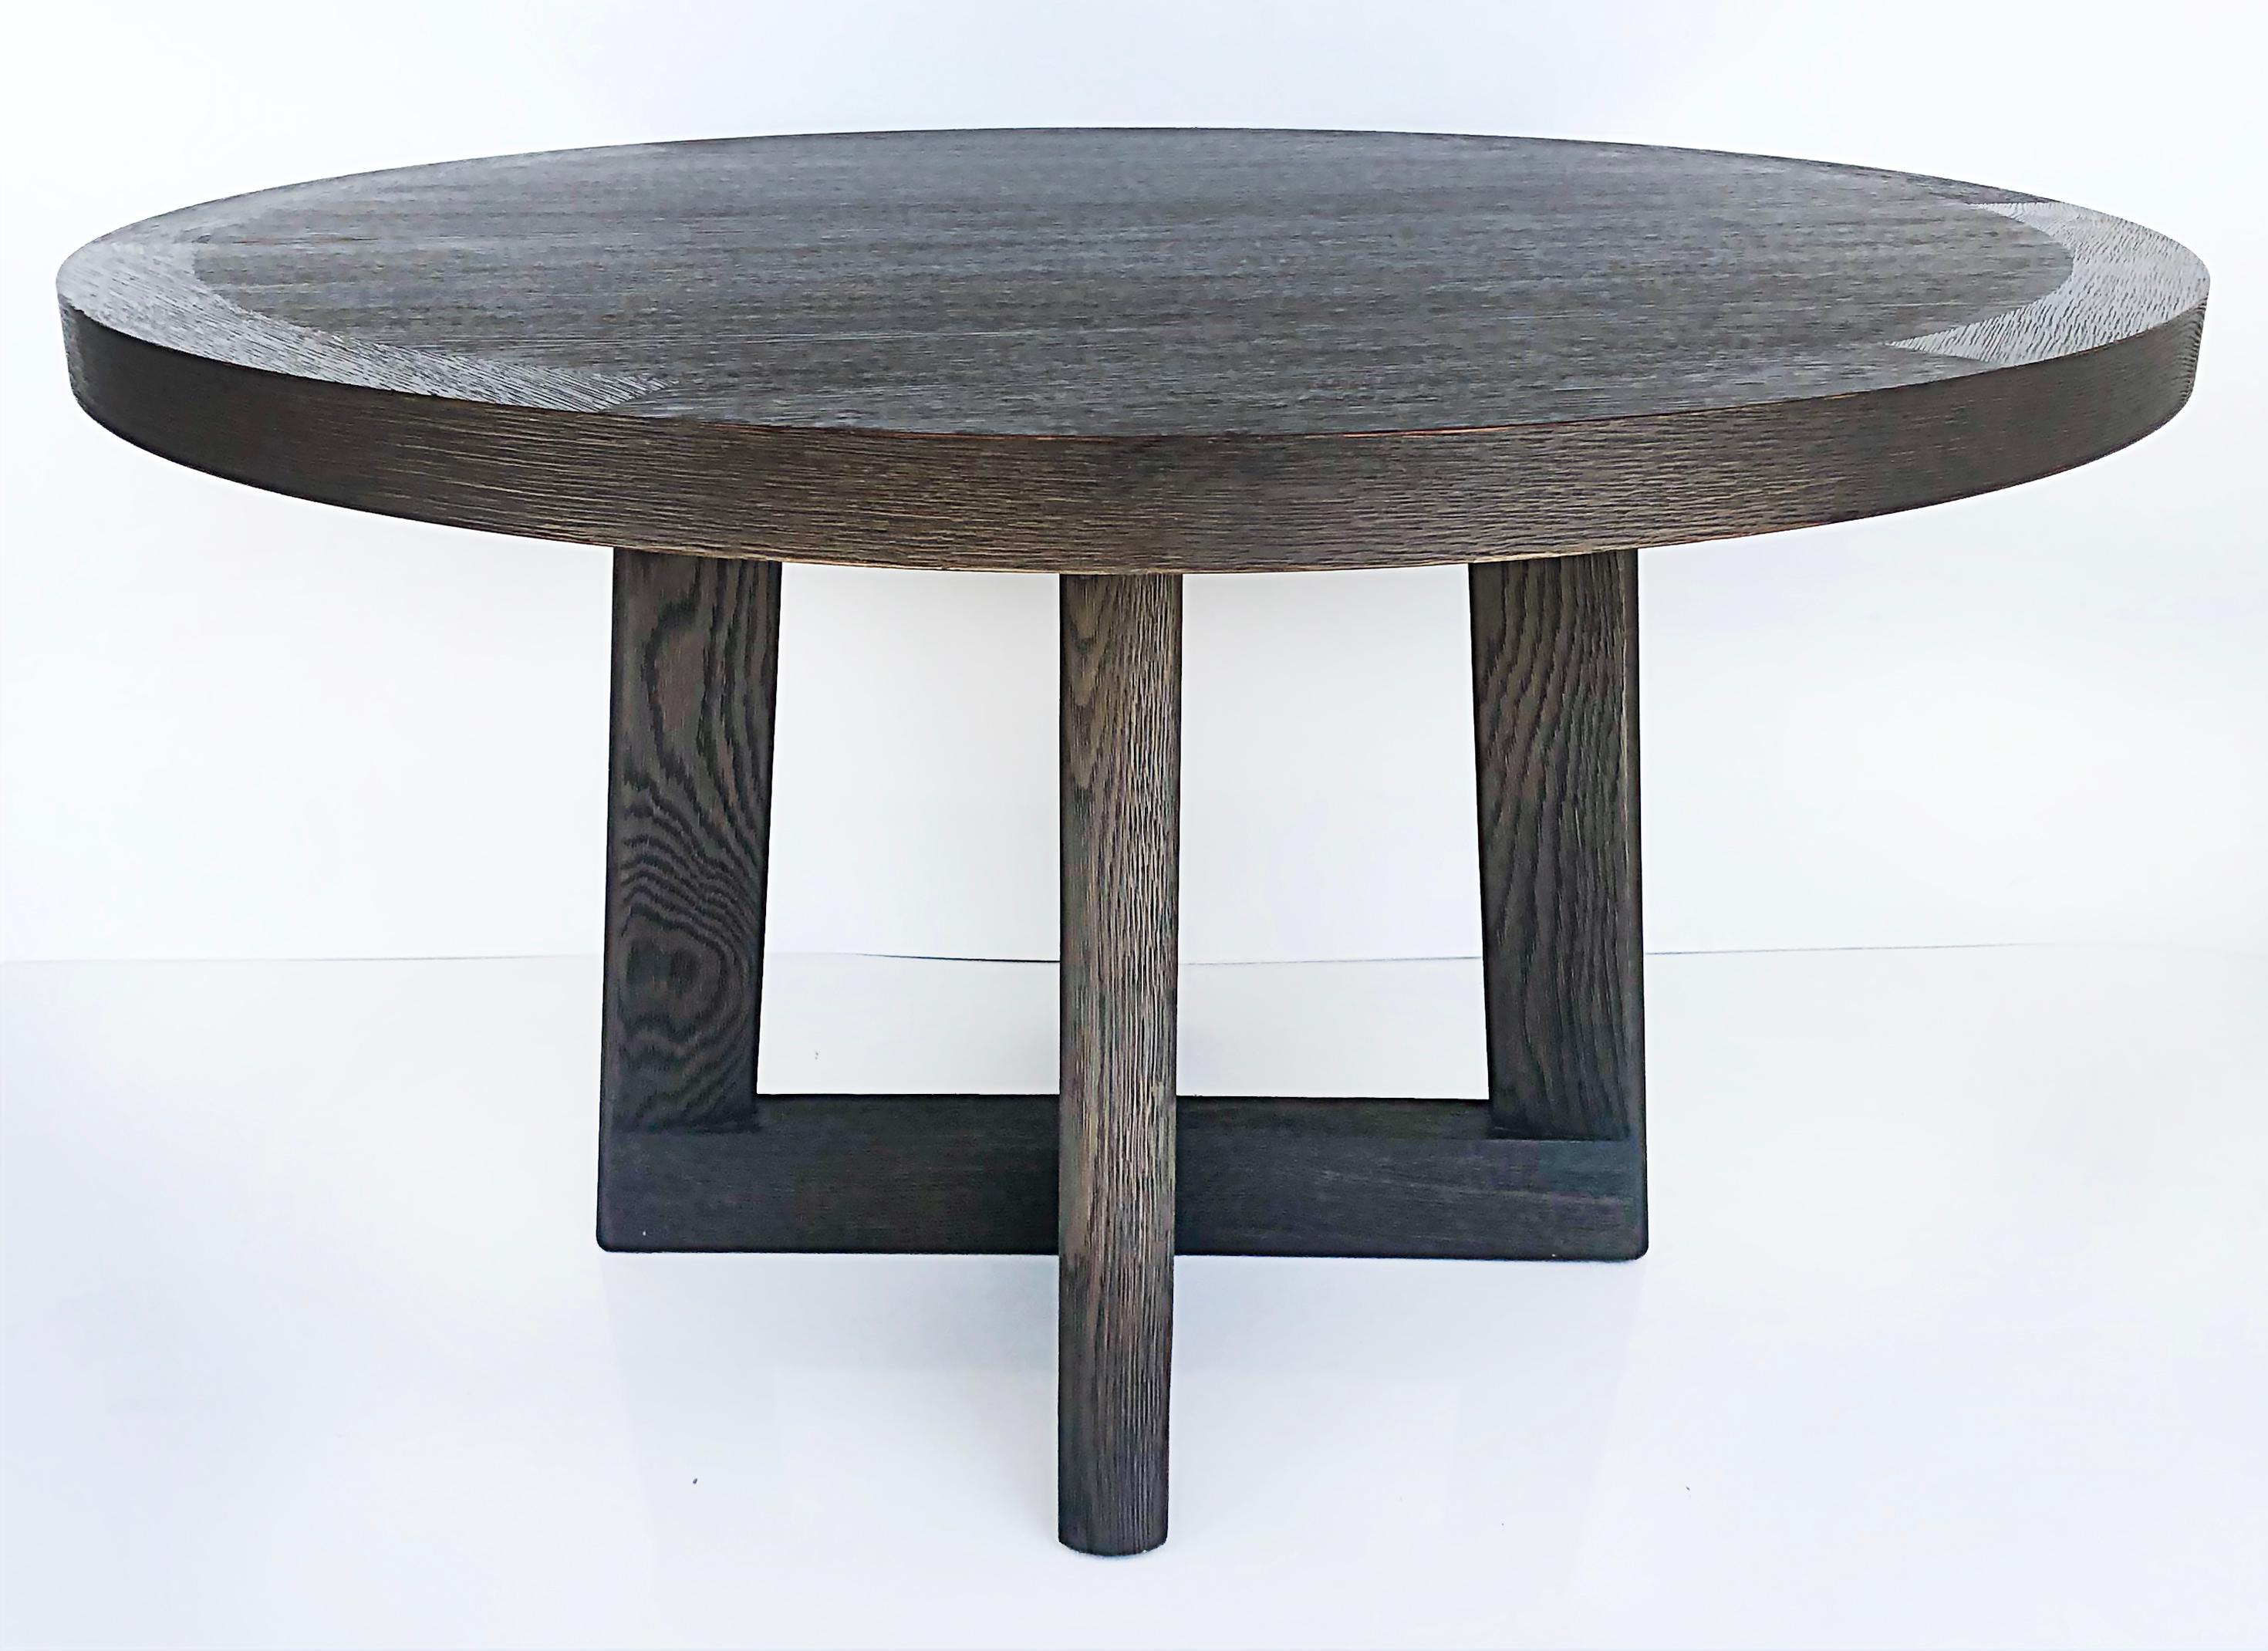 Christian Liaigre Casoar Cerused Oak Round Table, Ebonized Wire-brushed Finish 1